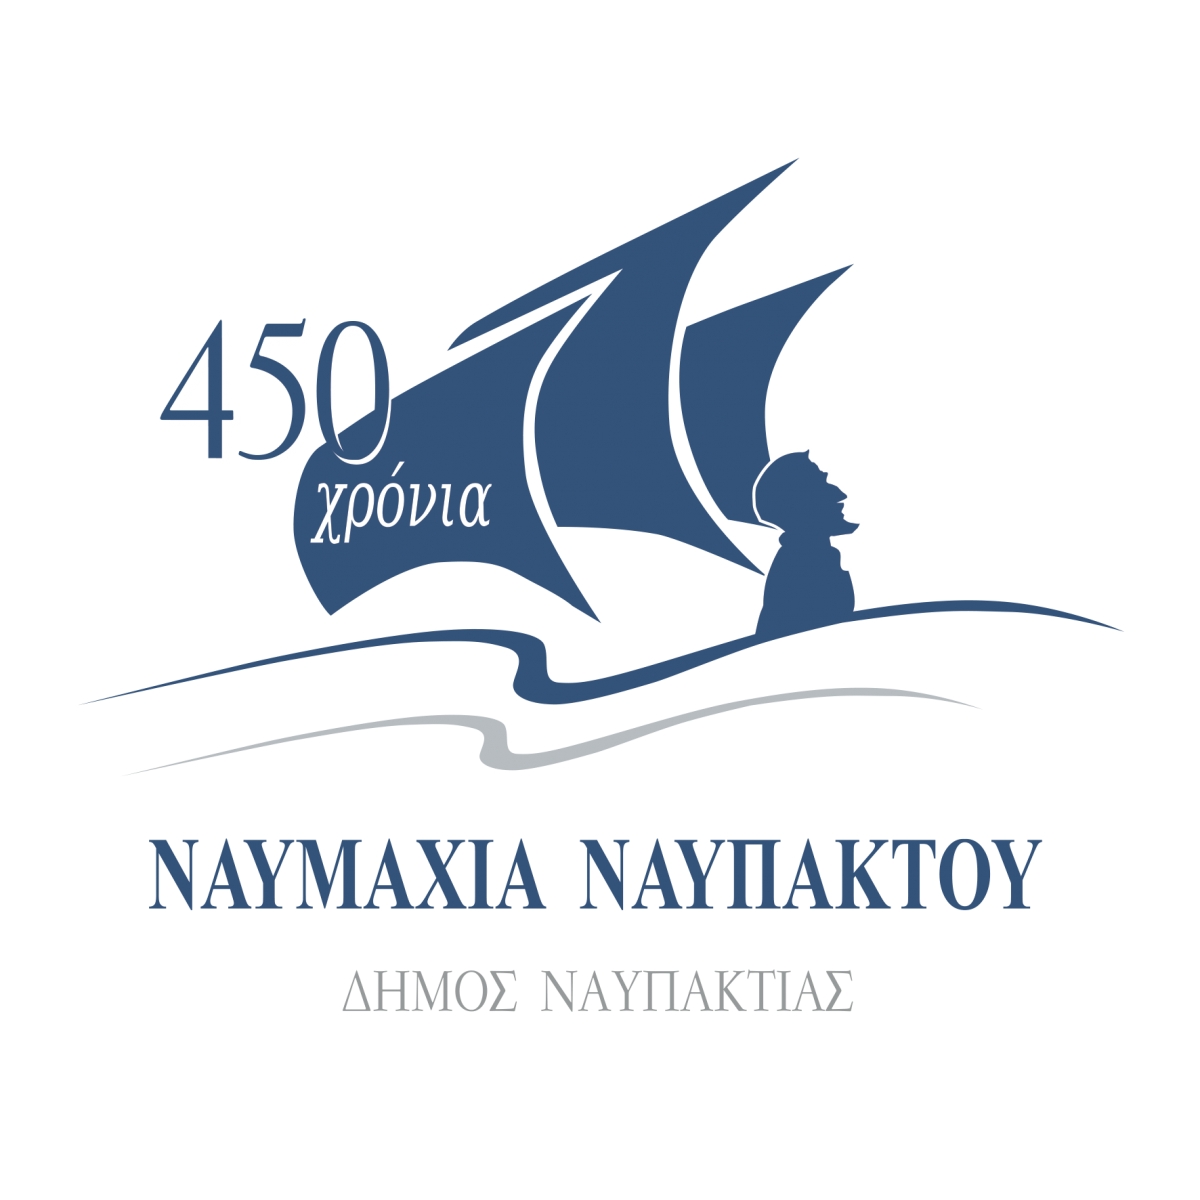 Σειρά εκδηλώσεων την Παρασκευή 8 Οκτωβρίου 2021 (17:30) στο Αρχοντικό Μπότσαρη. 450 Χρόνια «Ναυμαχία της Ναυπάκτου»